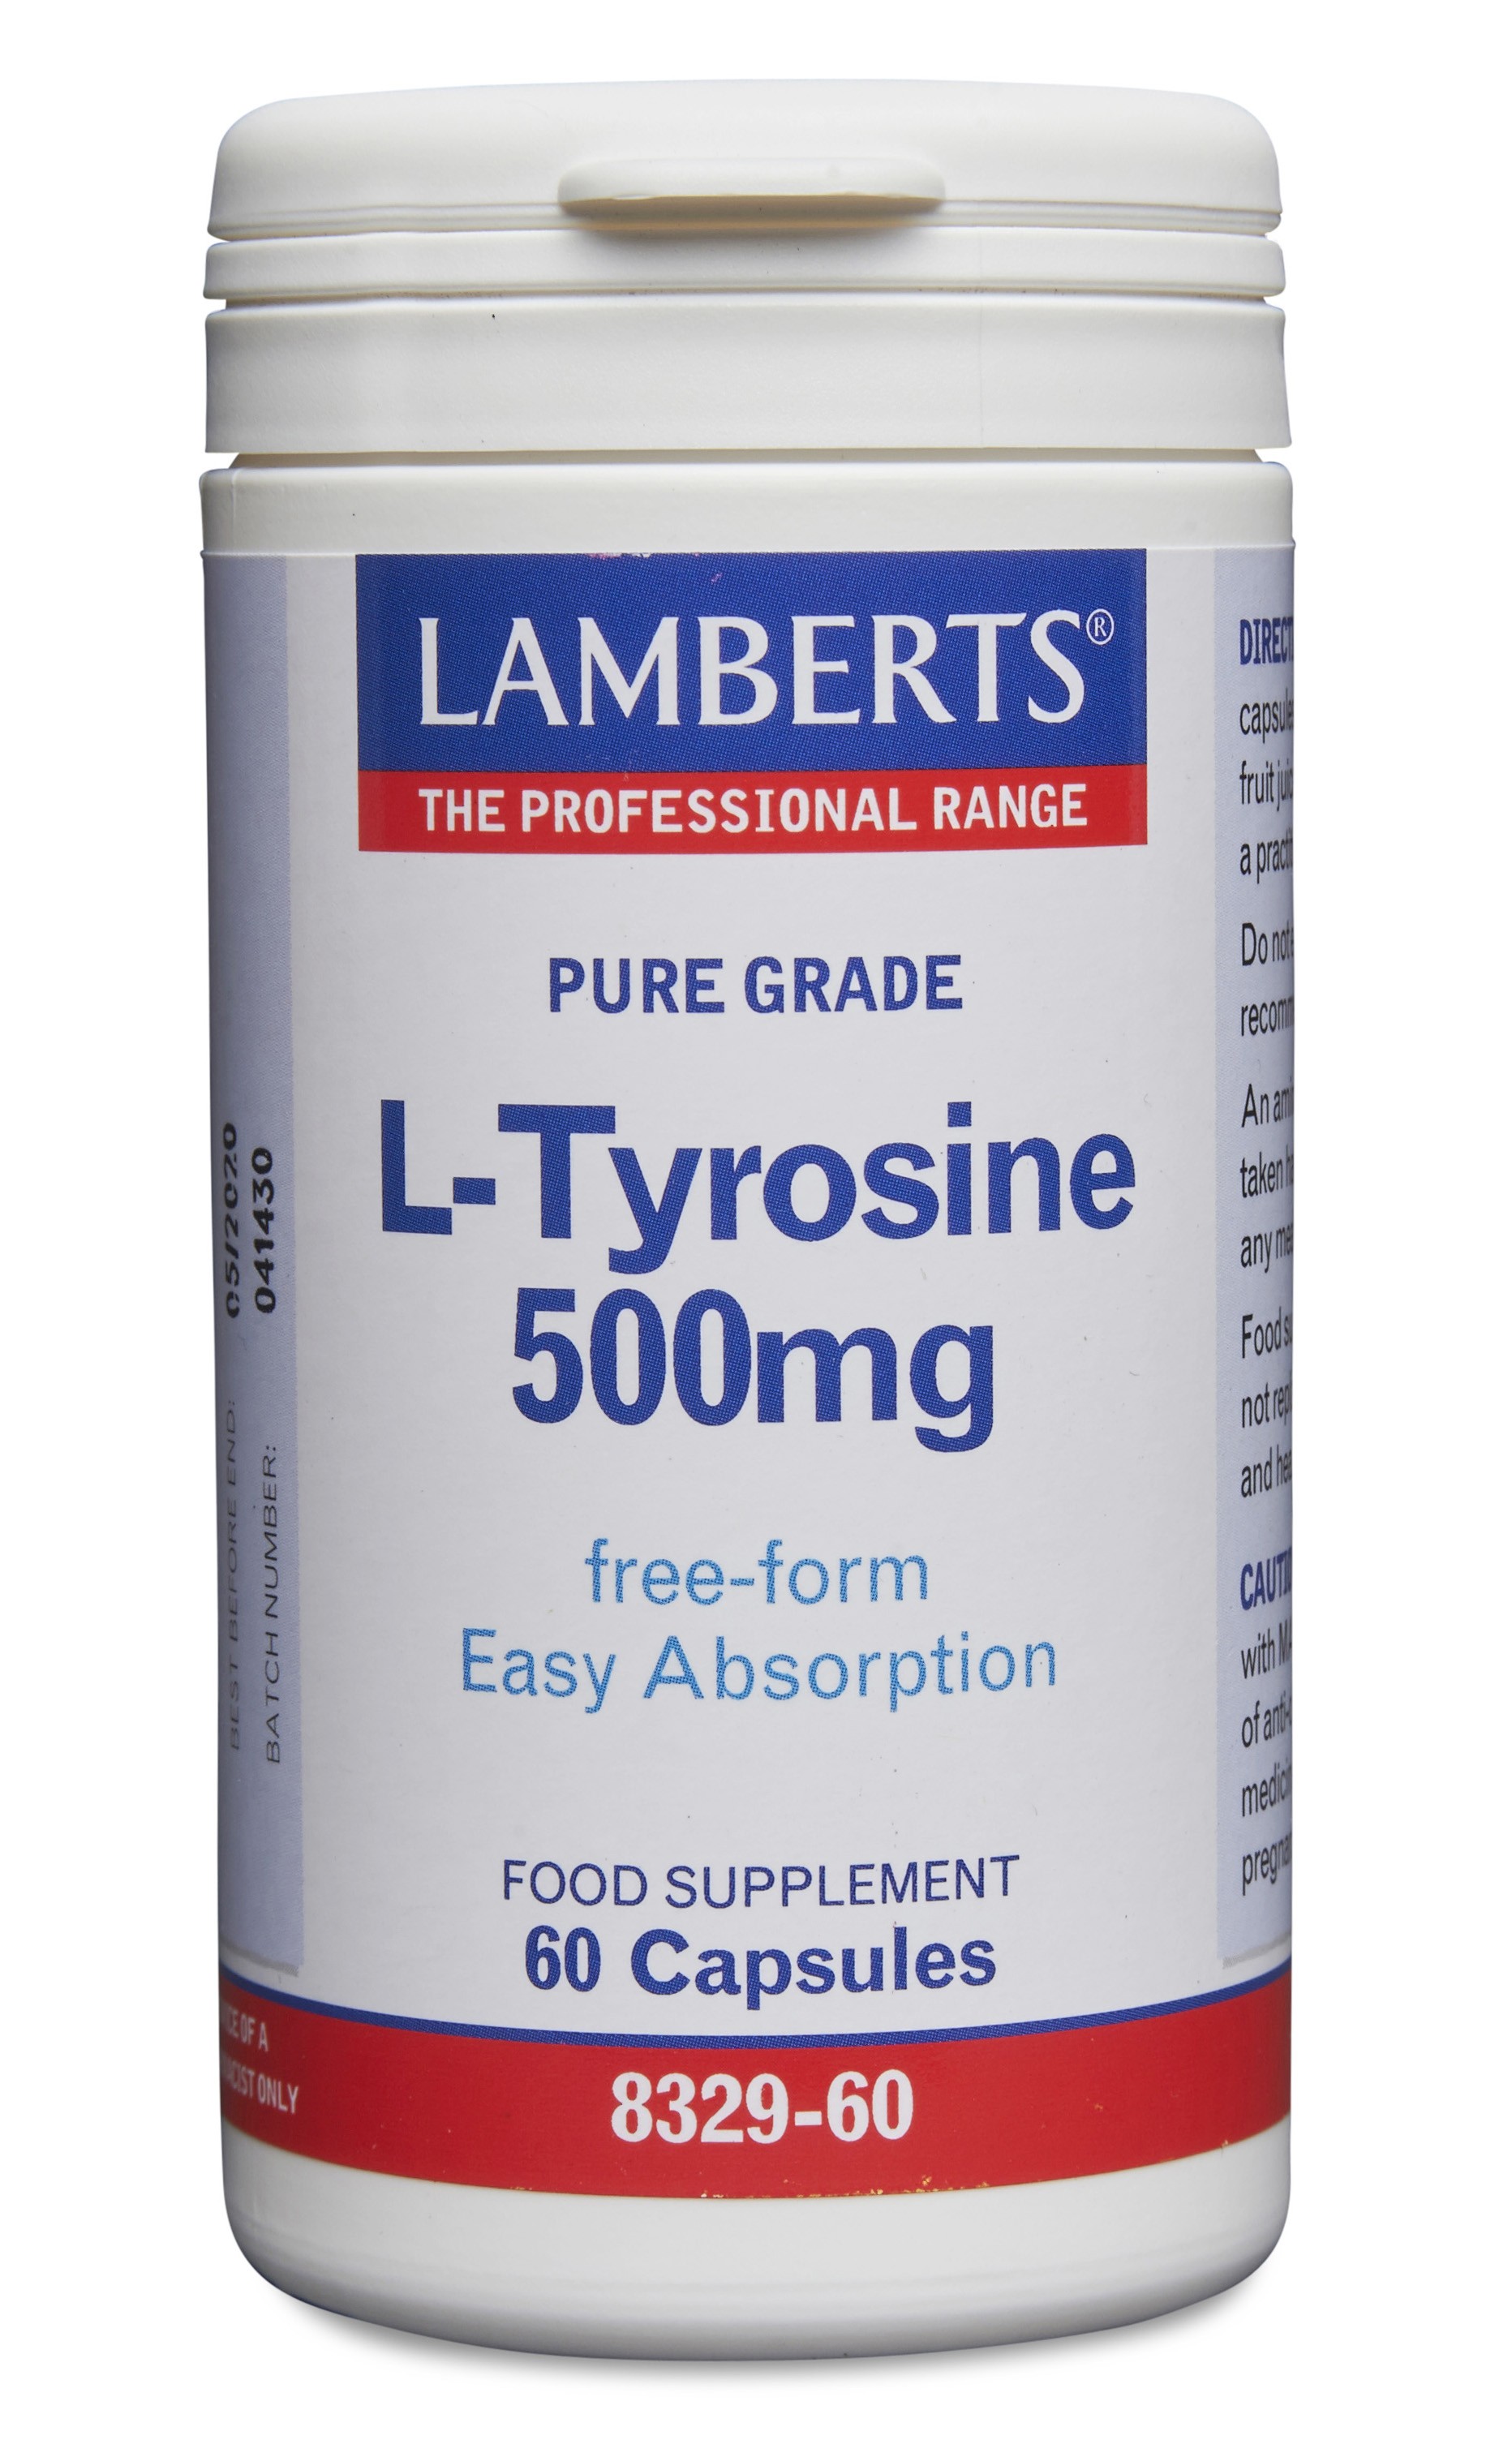 Lamberts L-Tyrosine 500mg